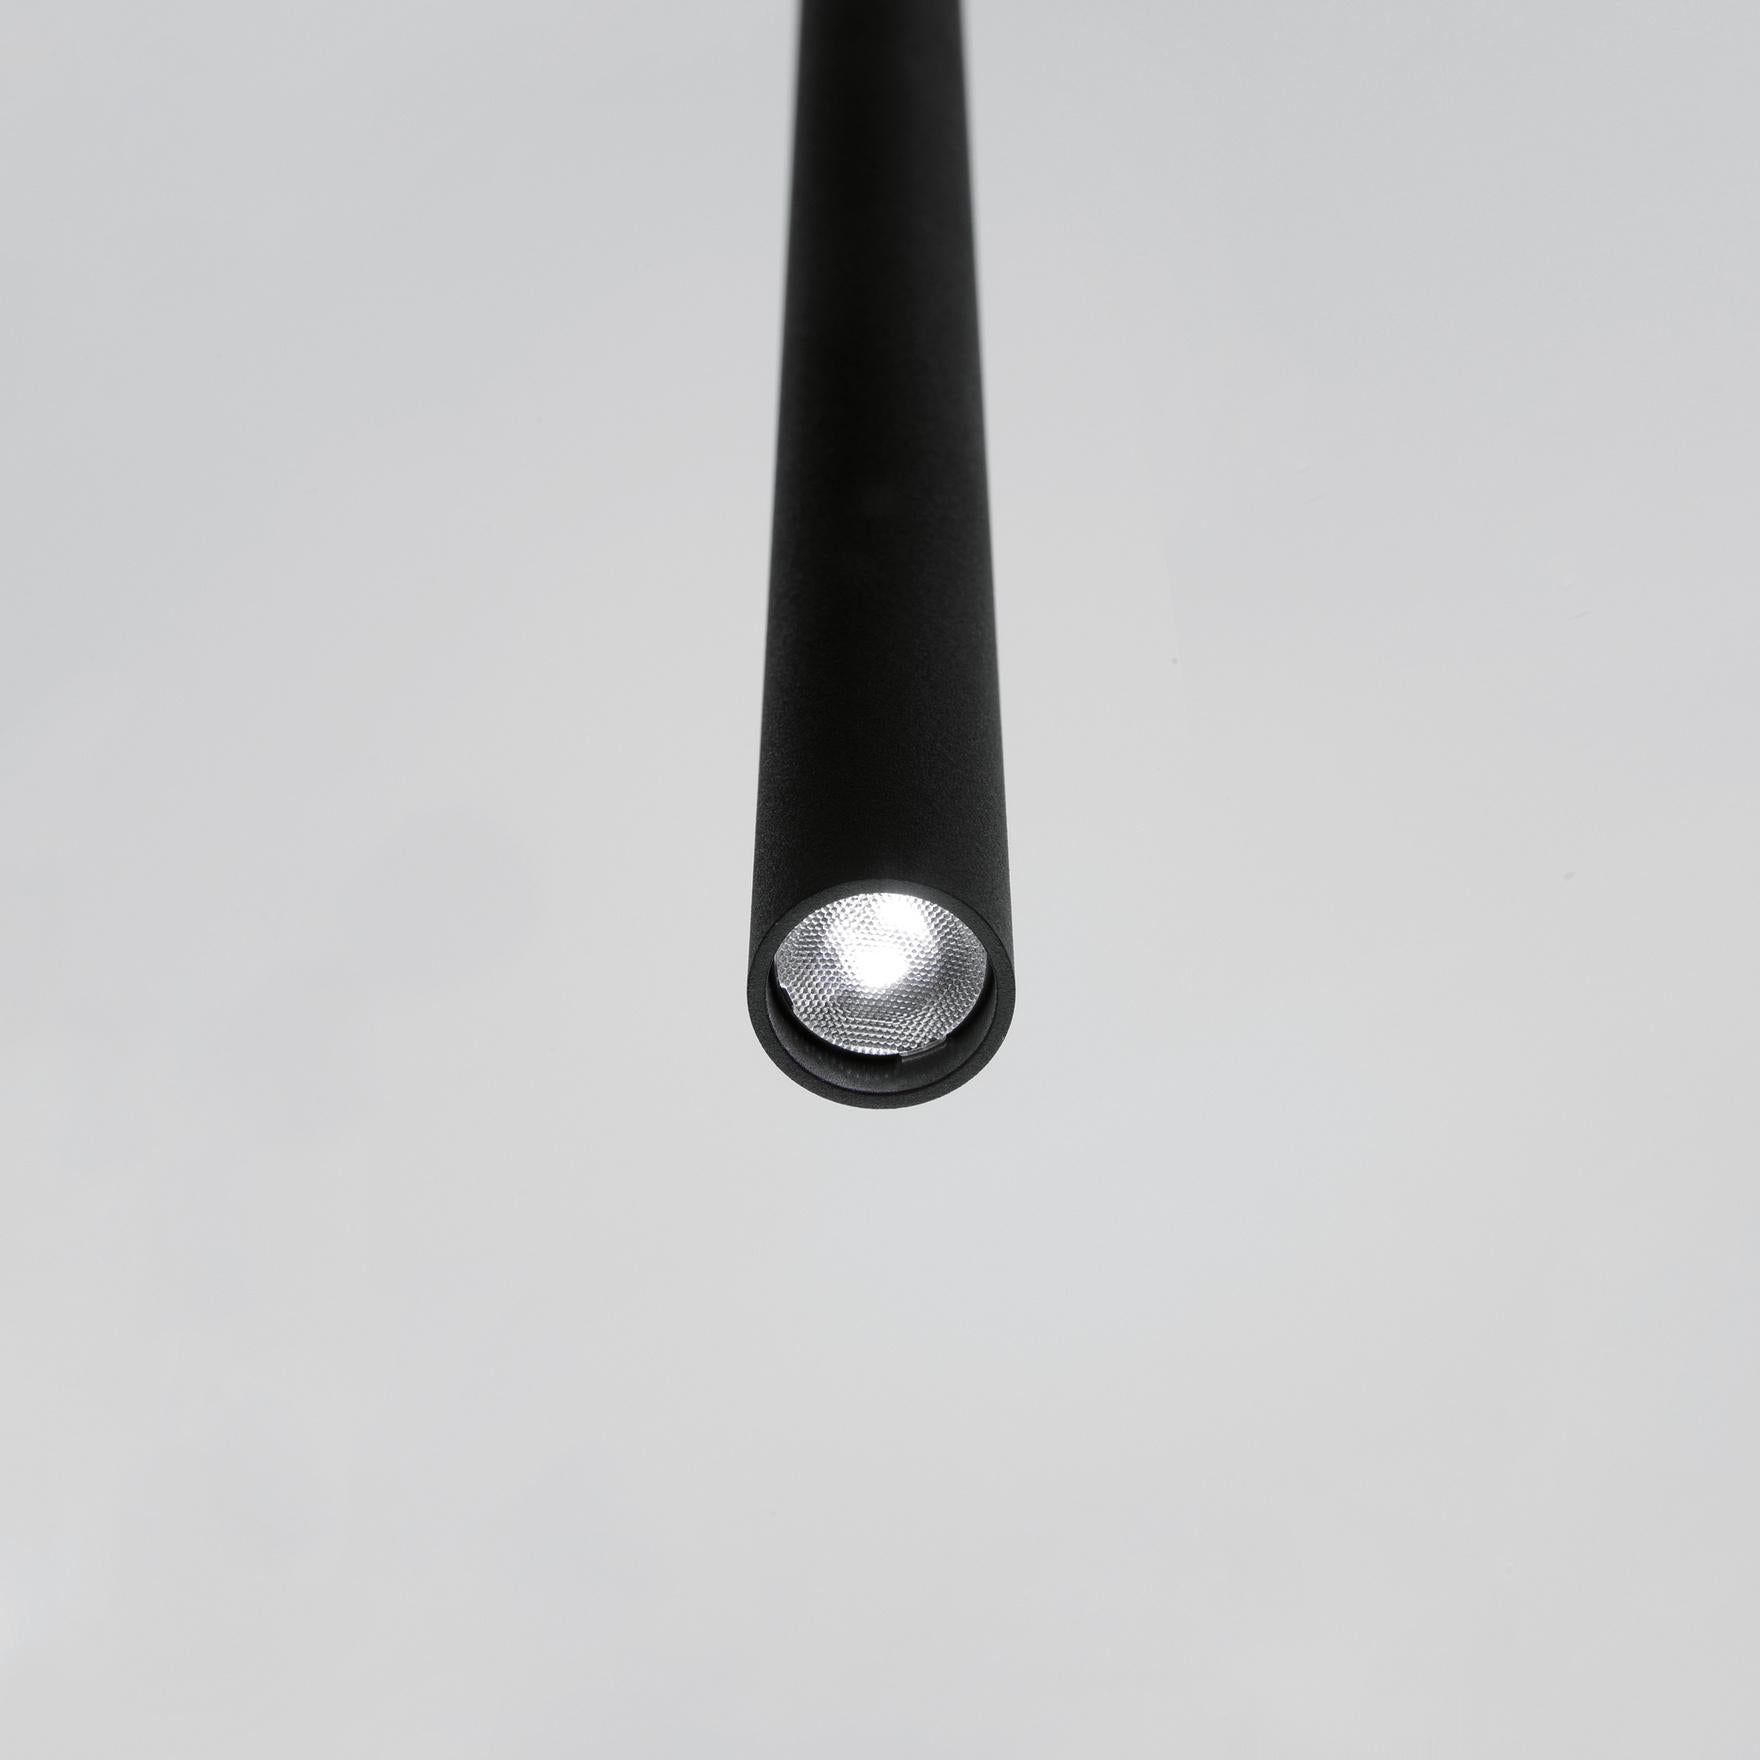 Davide Groppi MISS pendant lamp ON/OFF in Matt black by Omar Carraglia  For Sale 5